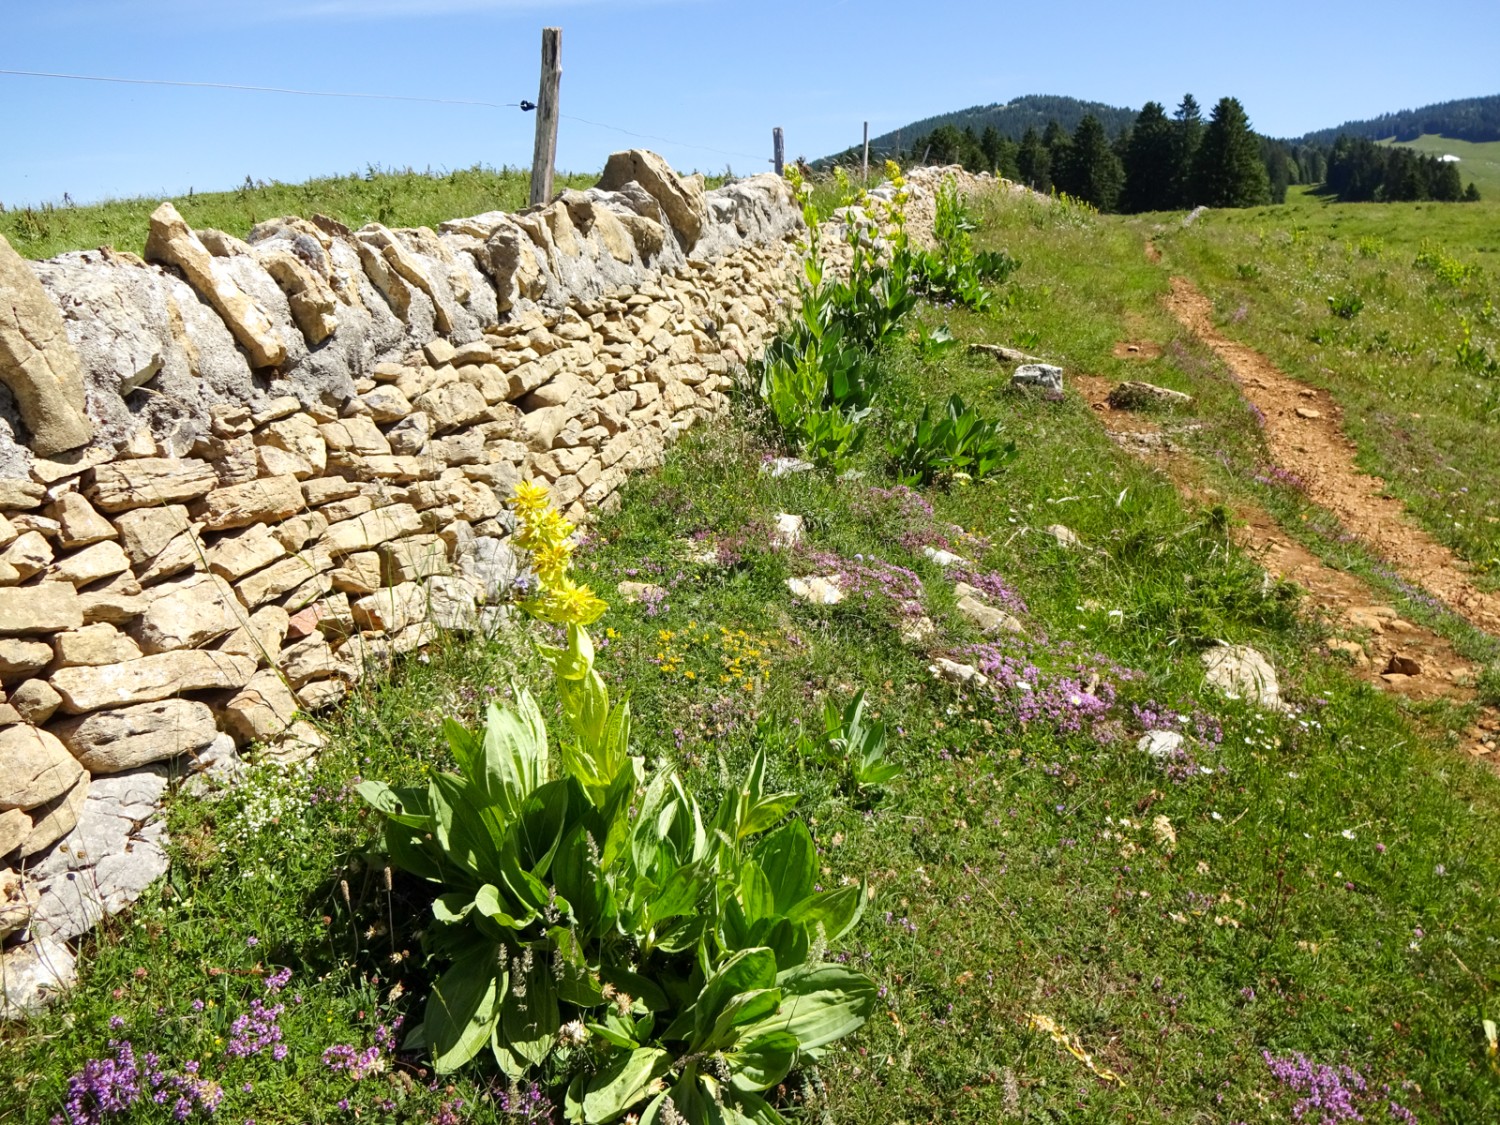 Typiques de la région, les murs de pierres sèches. Photo: Miroslaw Halaba